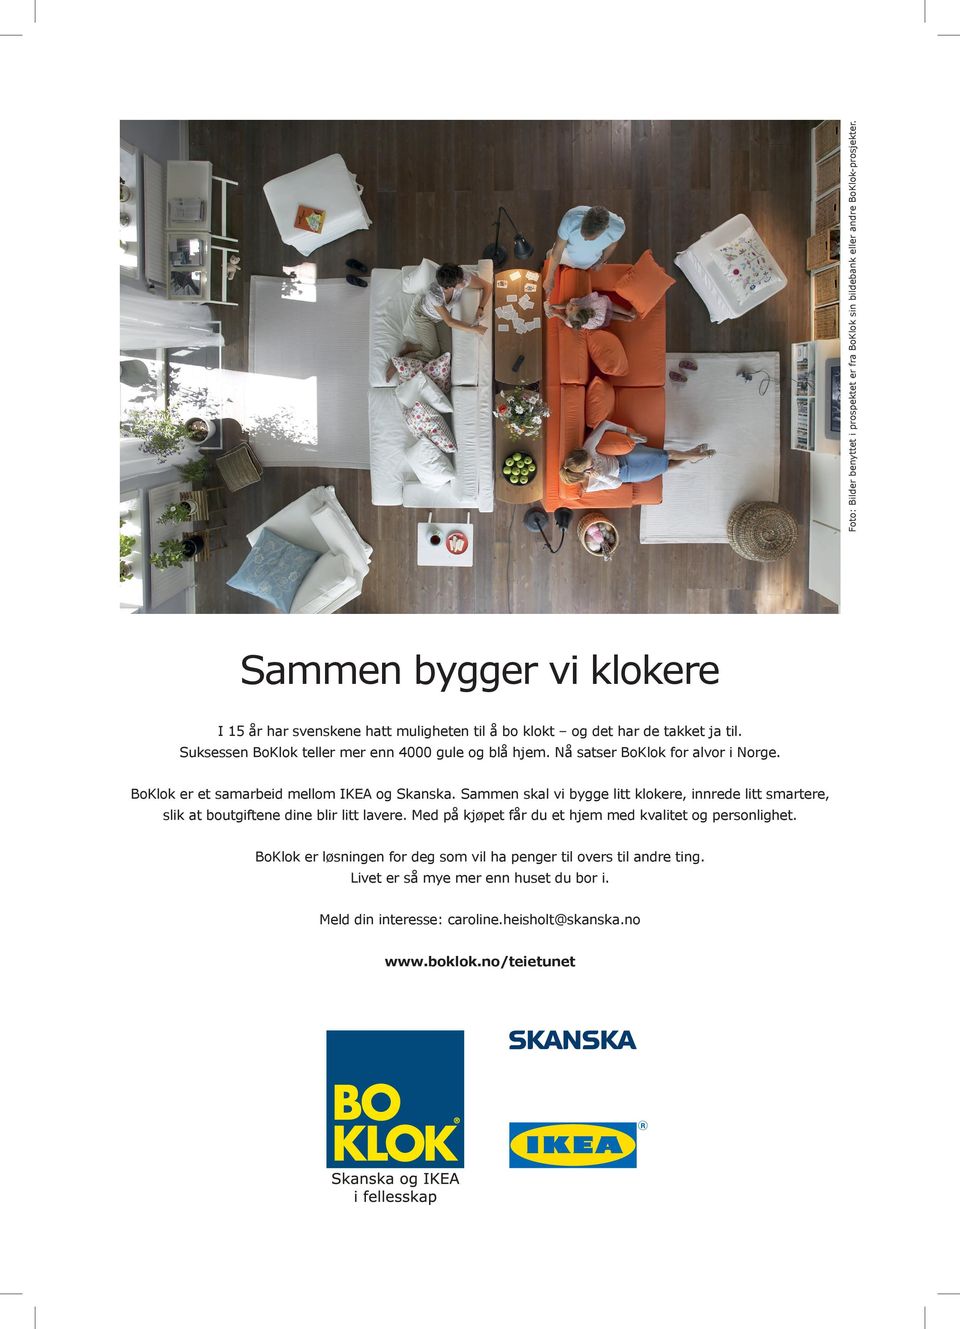 Nå satser BoKlok for alvor i Norge. BoKlok er et samarbeid mellom IKEA og Skanska.